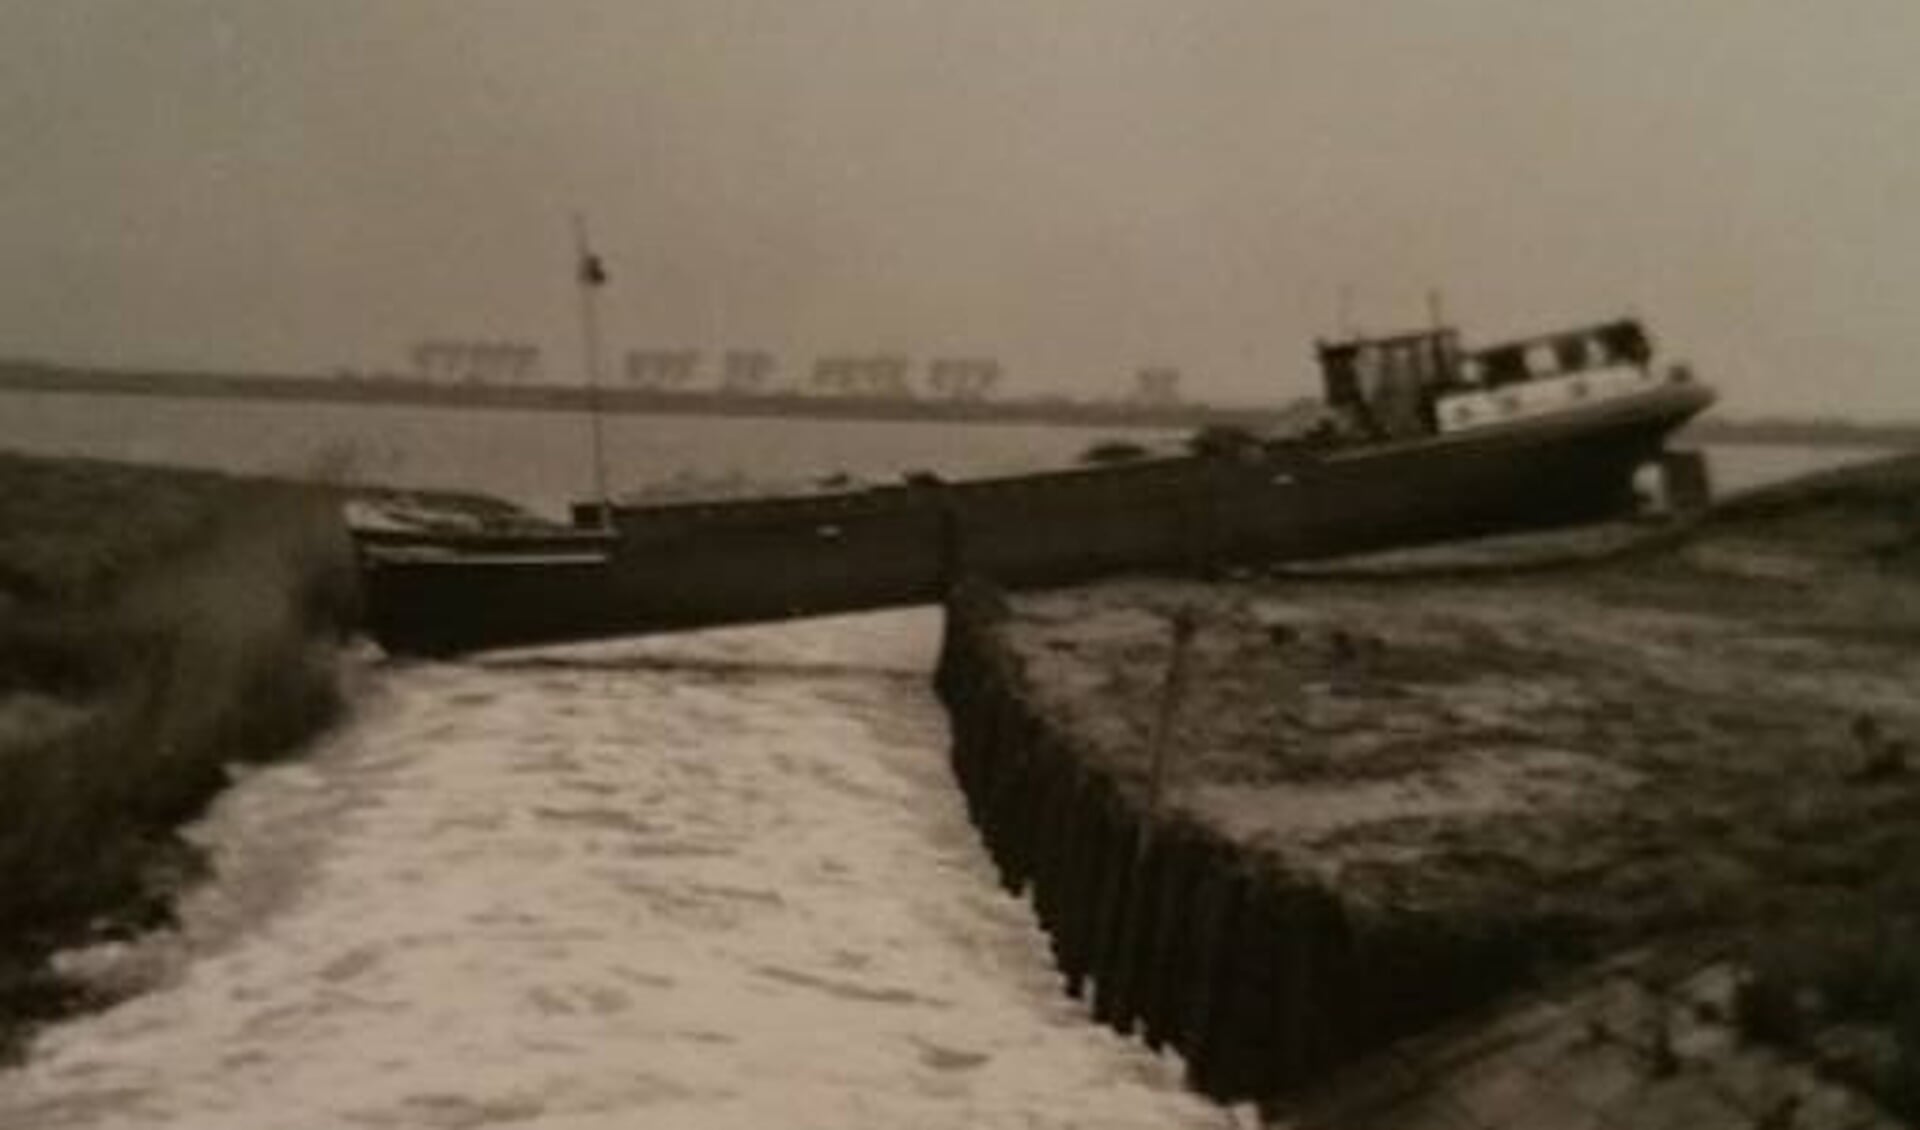 Schip de Leentje. Dit schip is tijdens de ramp op Tiengemeten op de dijk terecht gekomen. (archieffoto)